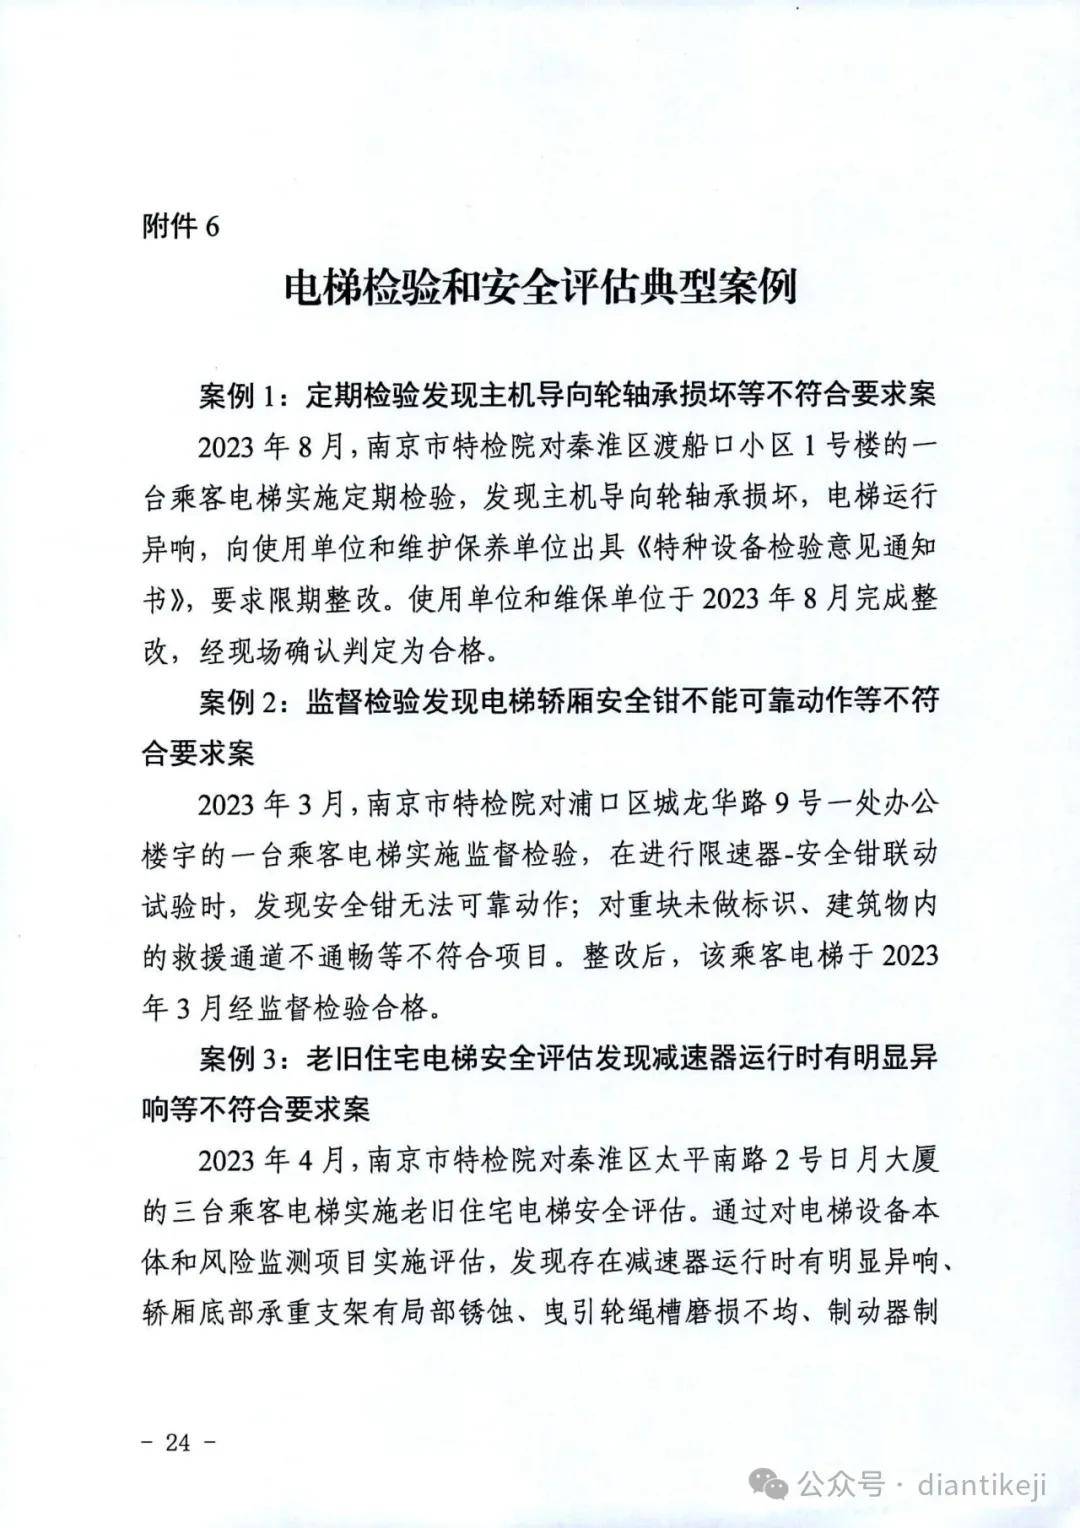 2023年南京电梯质量安全报告:电梯142085台,加装电梯前三中国产电梯占